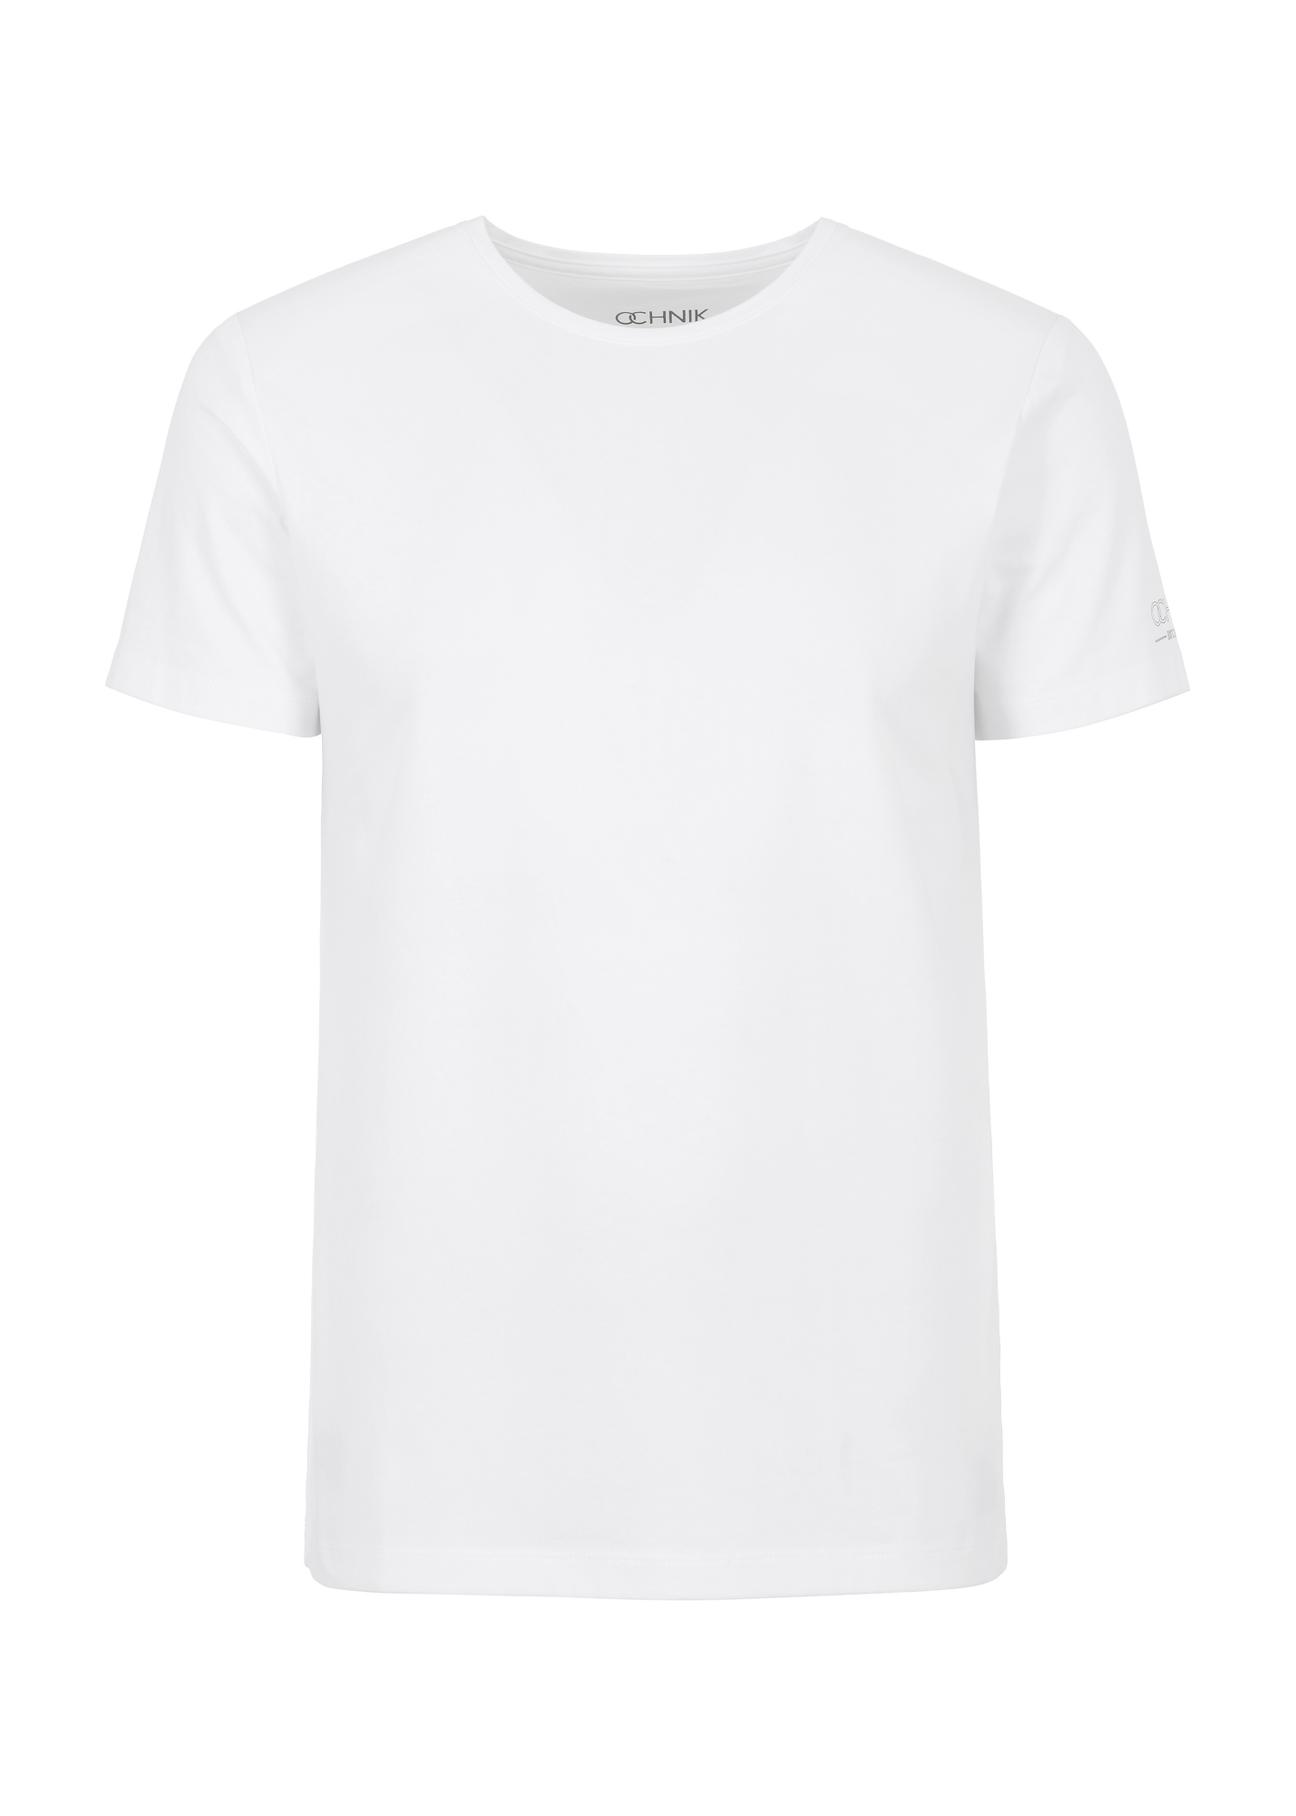 Zestaw T-shirtów męskich basic ZESMT-0040-15(W23)